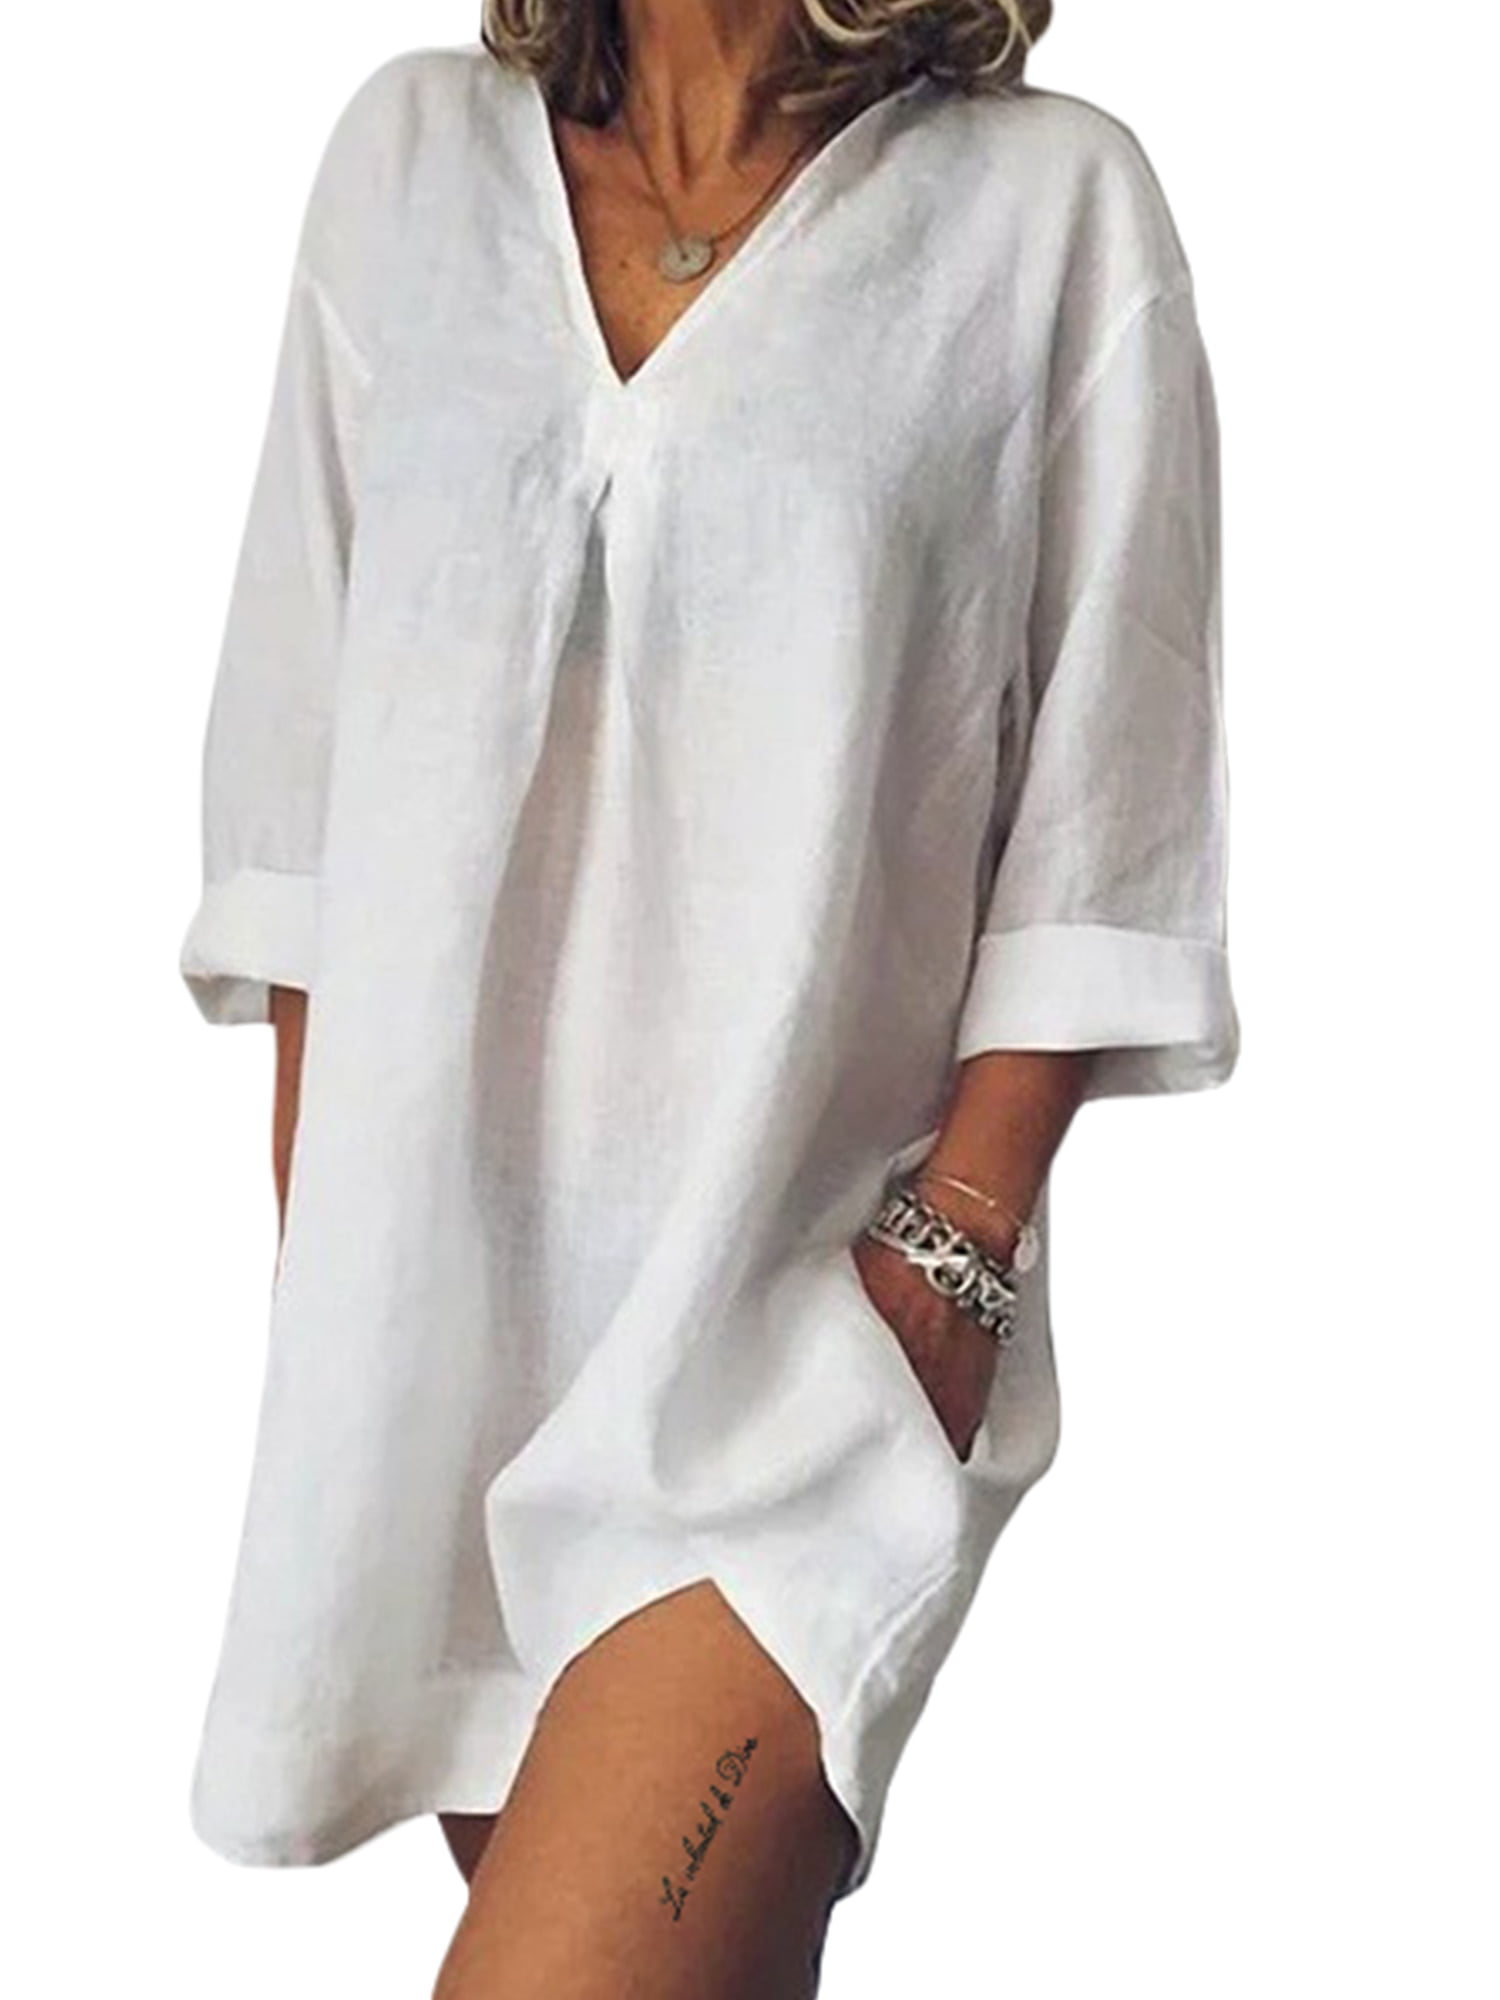 Womens T-Shirt Dress Summer Casual Short Sleeve A-Line V-Neck Linen Blouse Dress with Pockets 